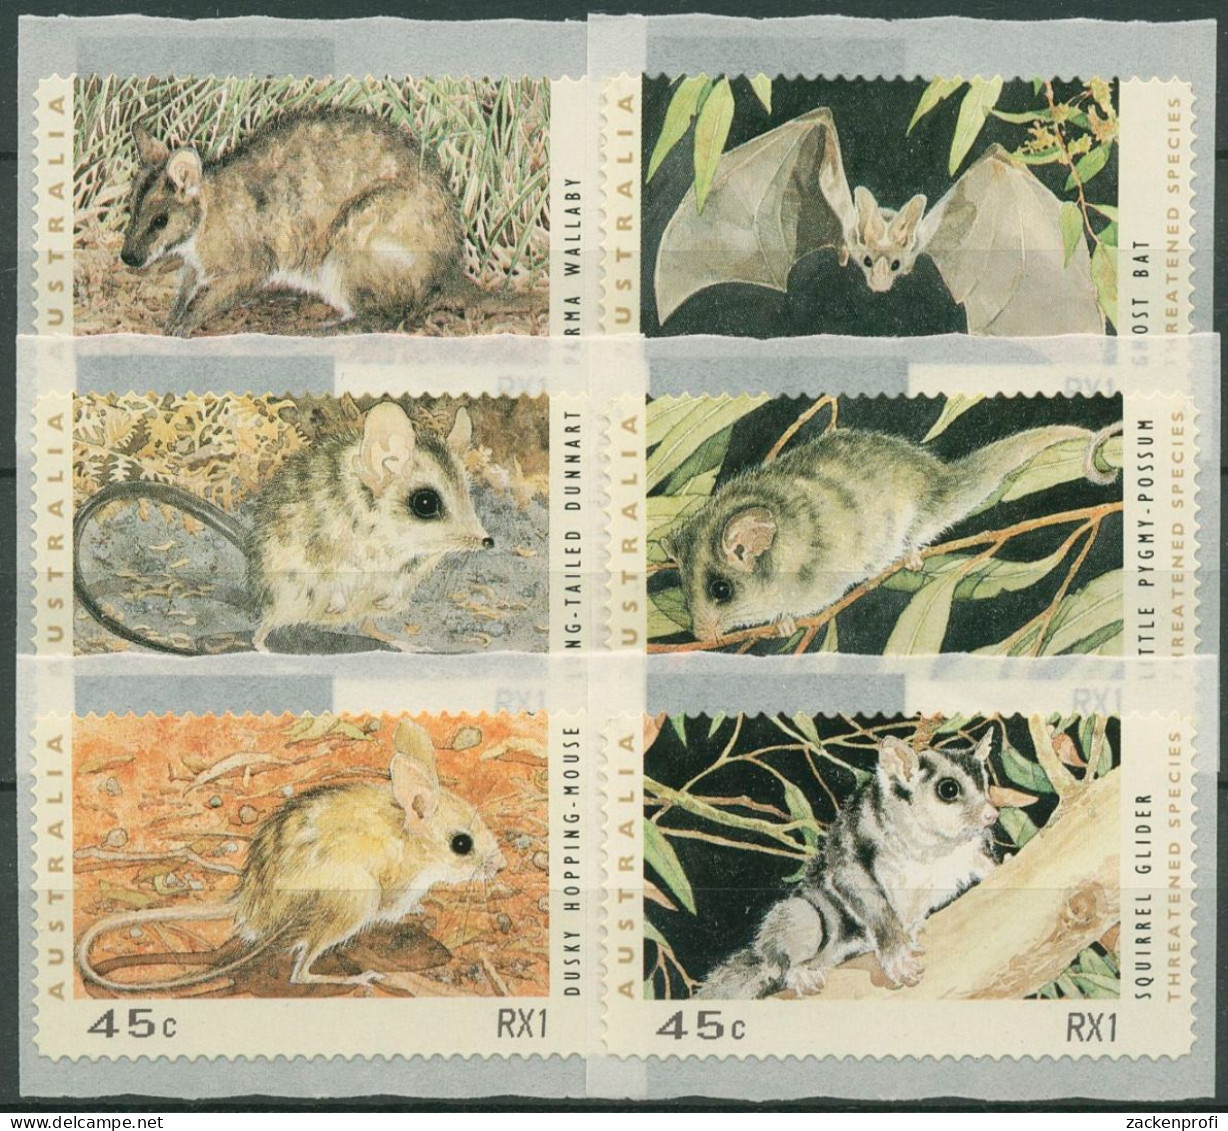 Australien 1993 Gefährdete Tiere Automatenmarken 27/32 S3, RX1 Postfrisch - Vignette [ATM]